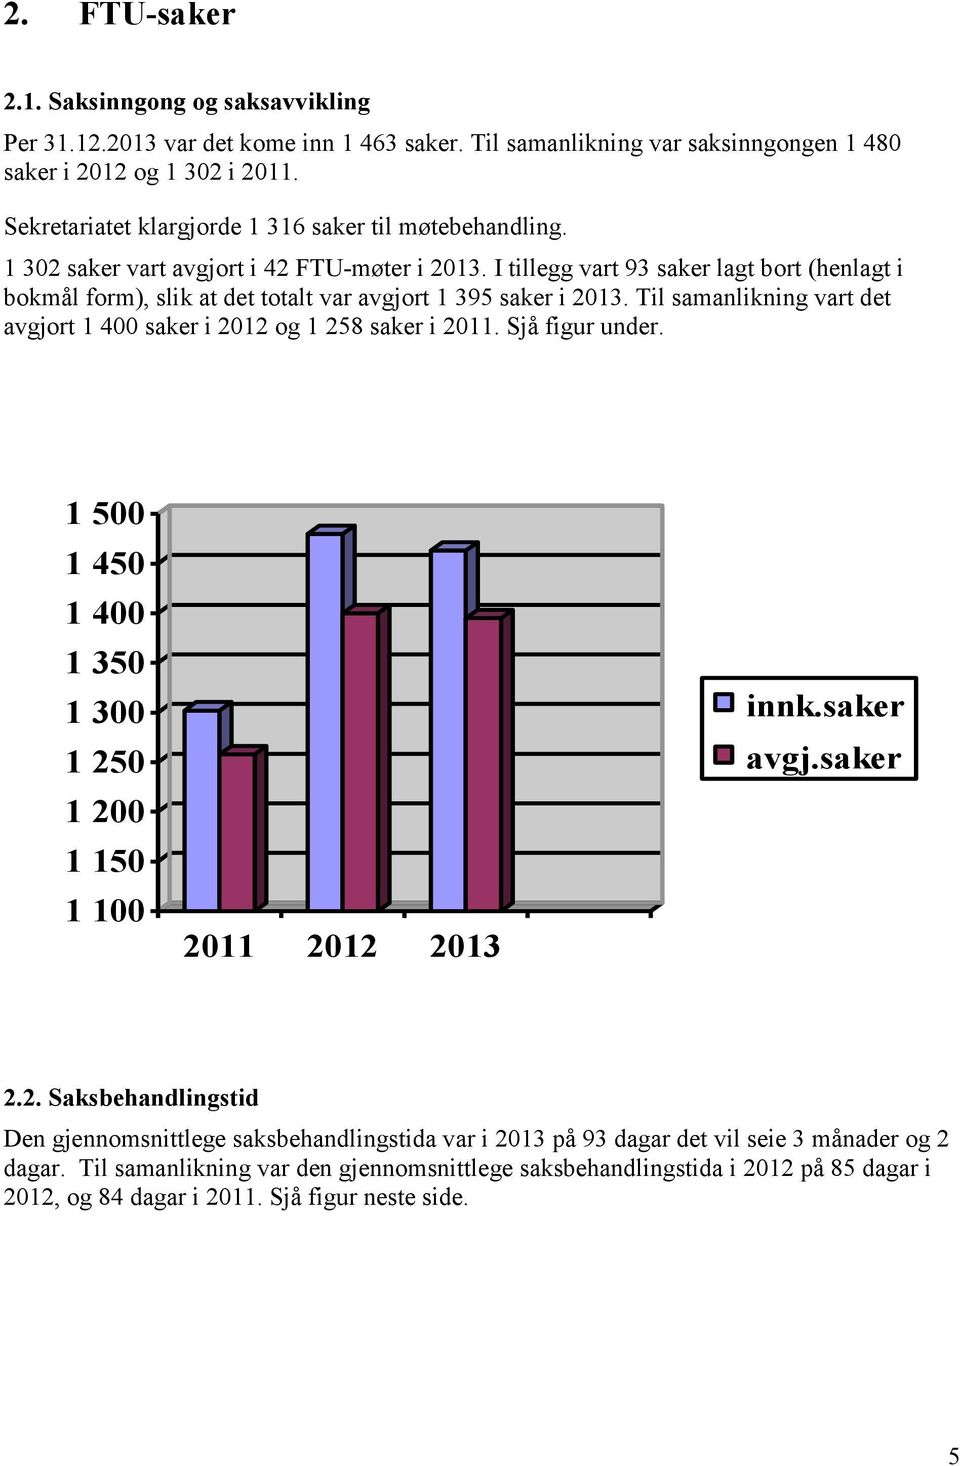 I tillegg vart 93 saker lagt bort (henlagt i bokmål form), slik at det totalt var avgjort 1 395 saker i 2013. Til samanlikning vart det avgjort 1 400 saker i 2012 og 1 258 saker i 2011.